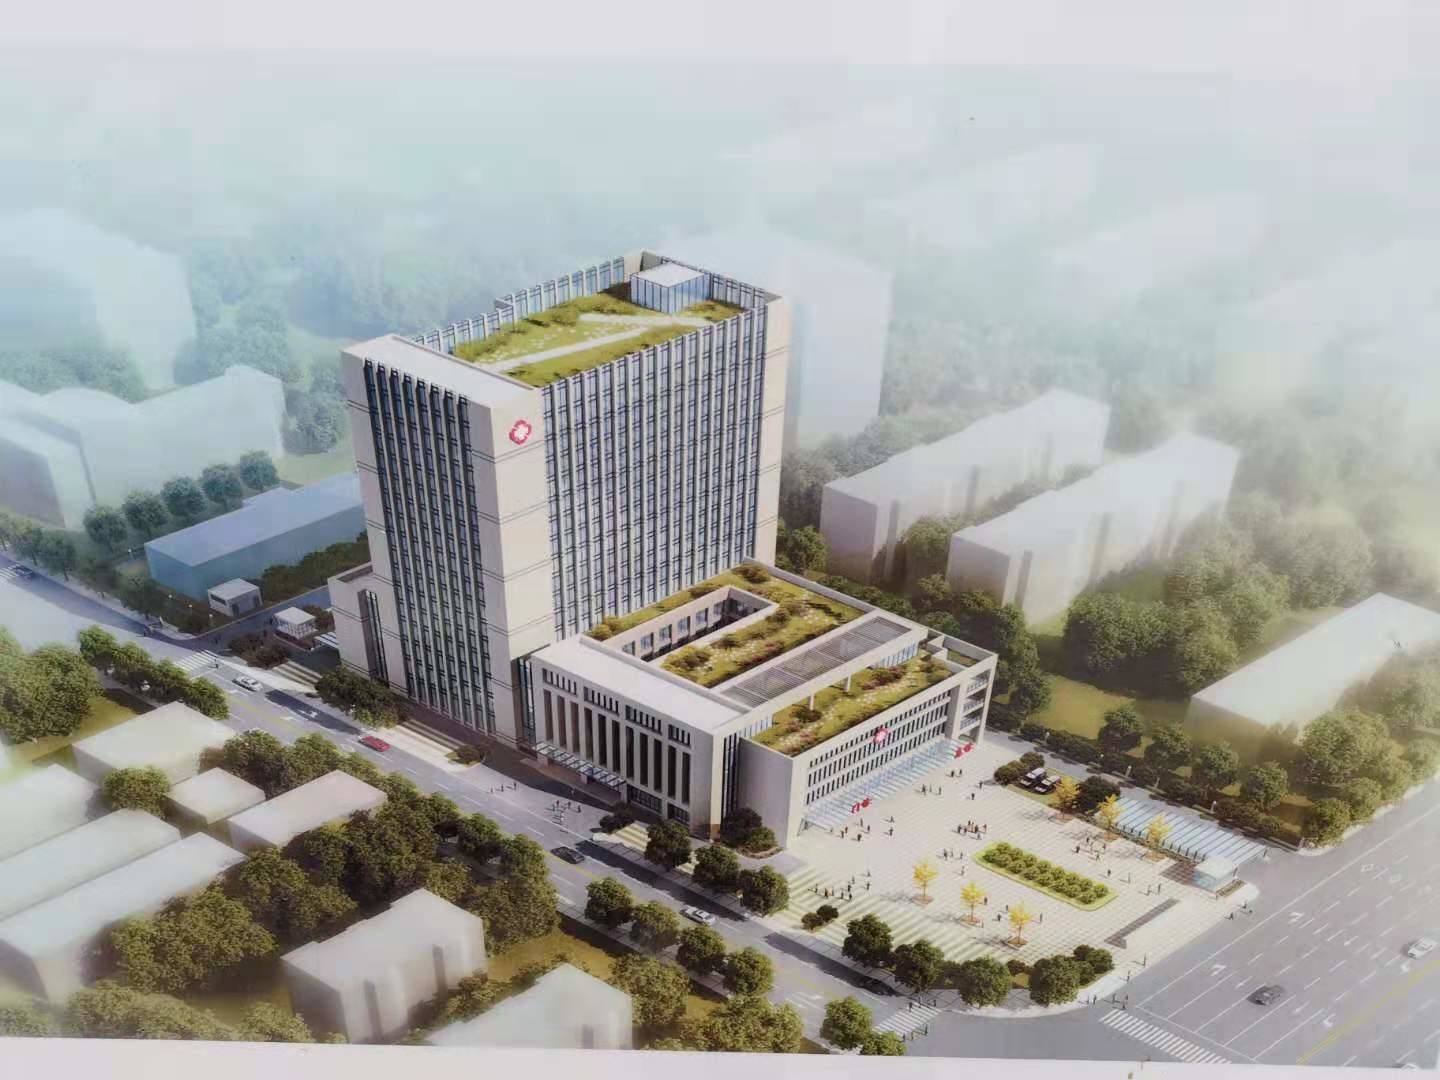 【在建项目信息】 南阳市第一人民医院西院区门急诊及医技楼、综合病房楼建设项目